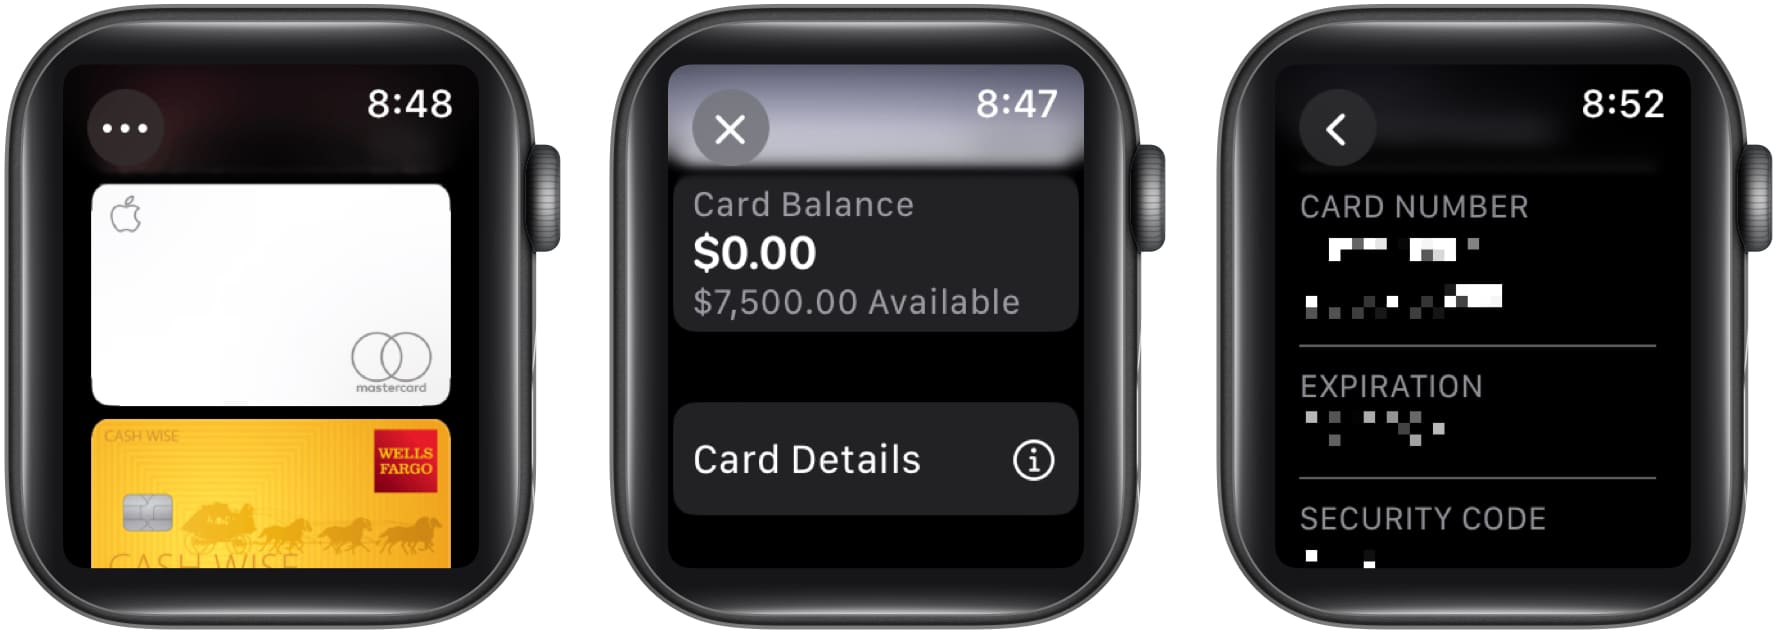 Lépések az Apple Card számának és részleteinek megtekintéséhez az Apple Watchon